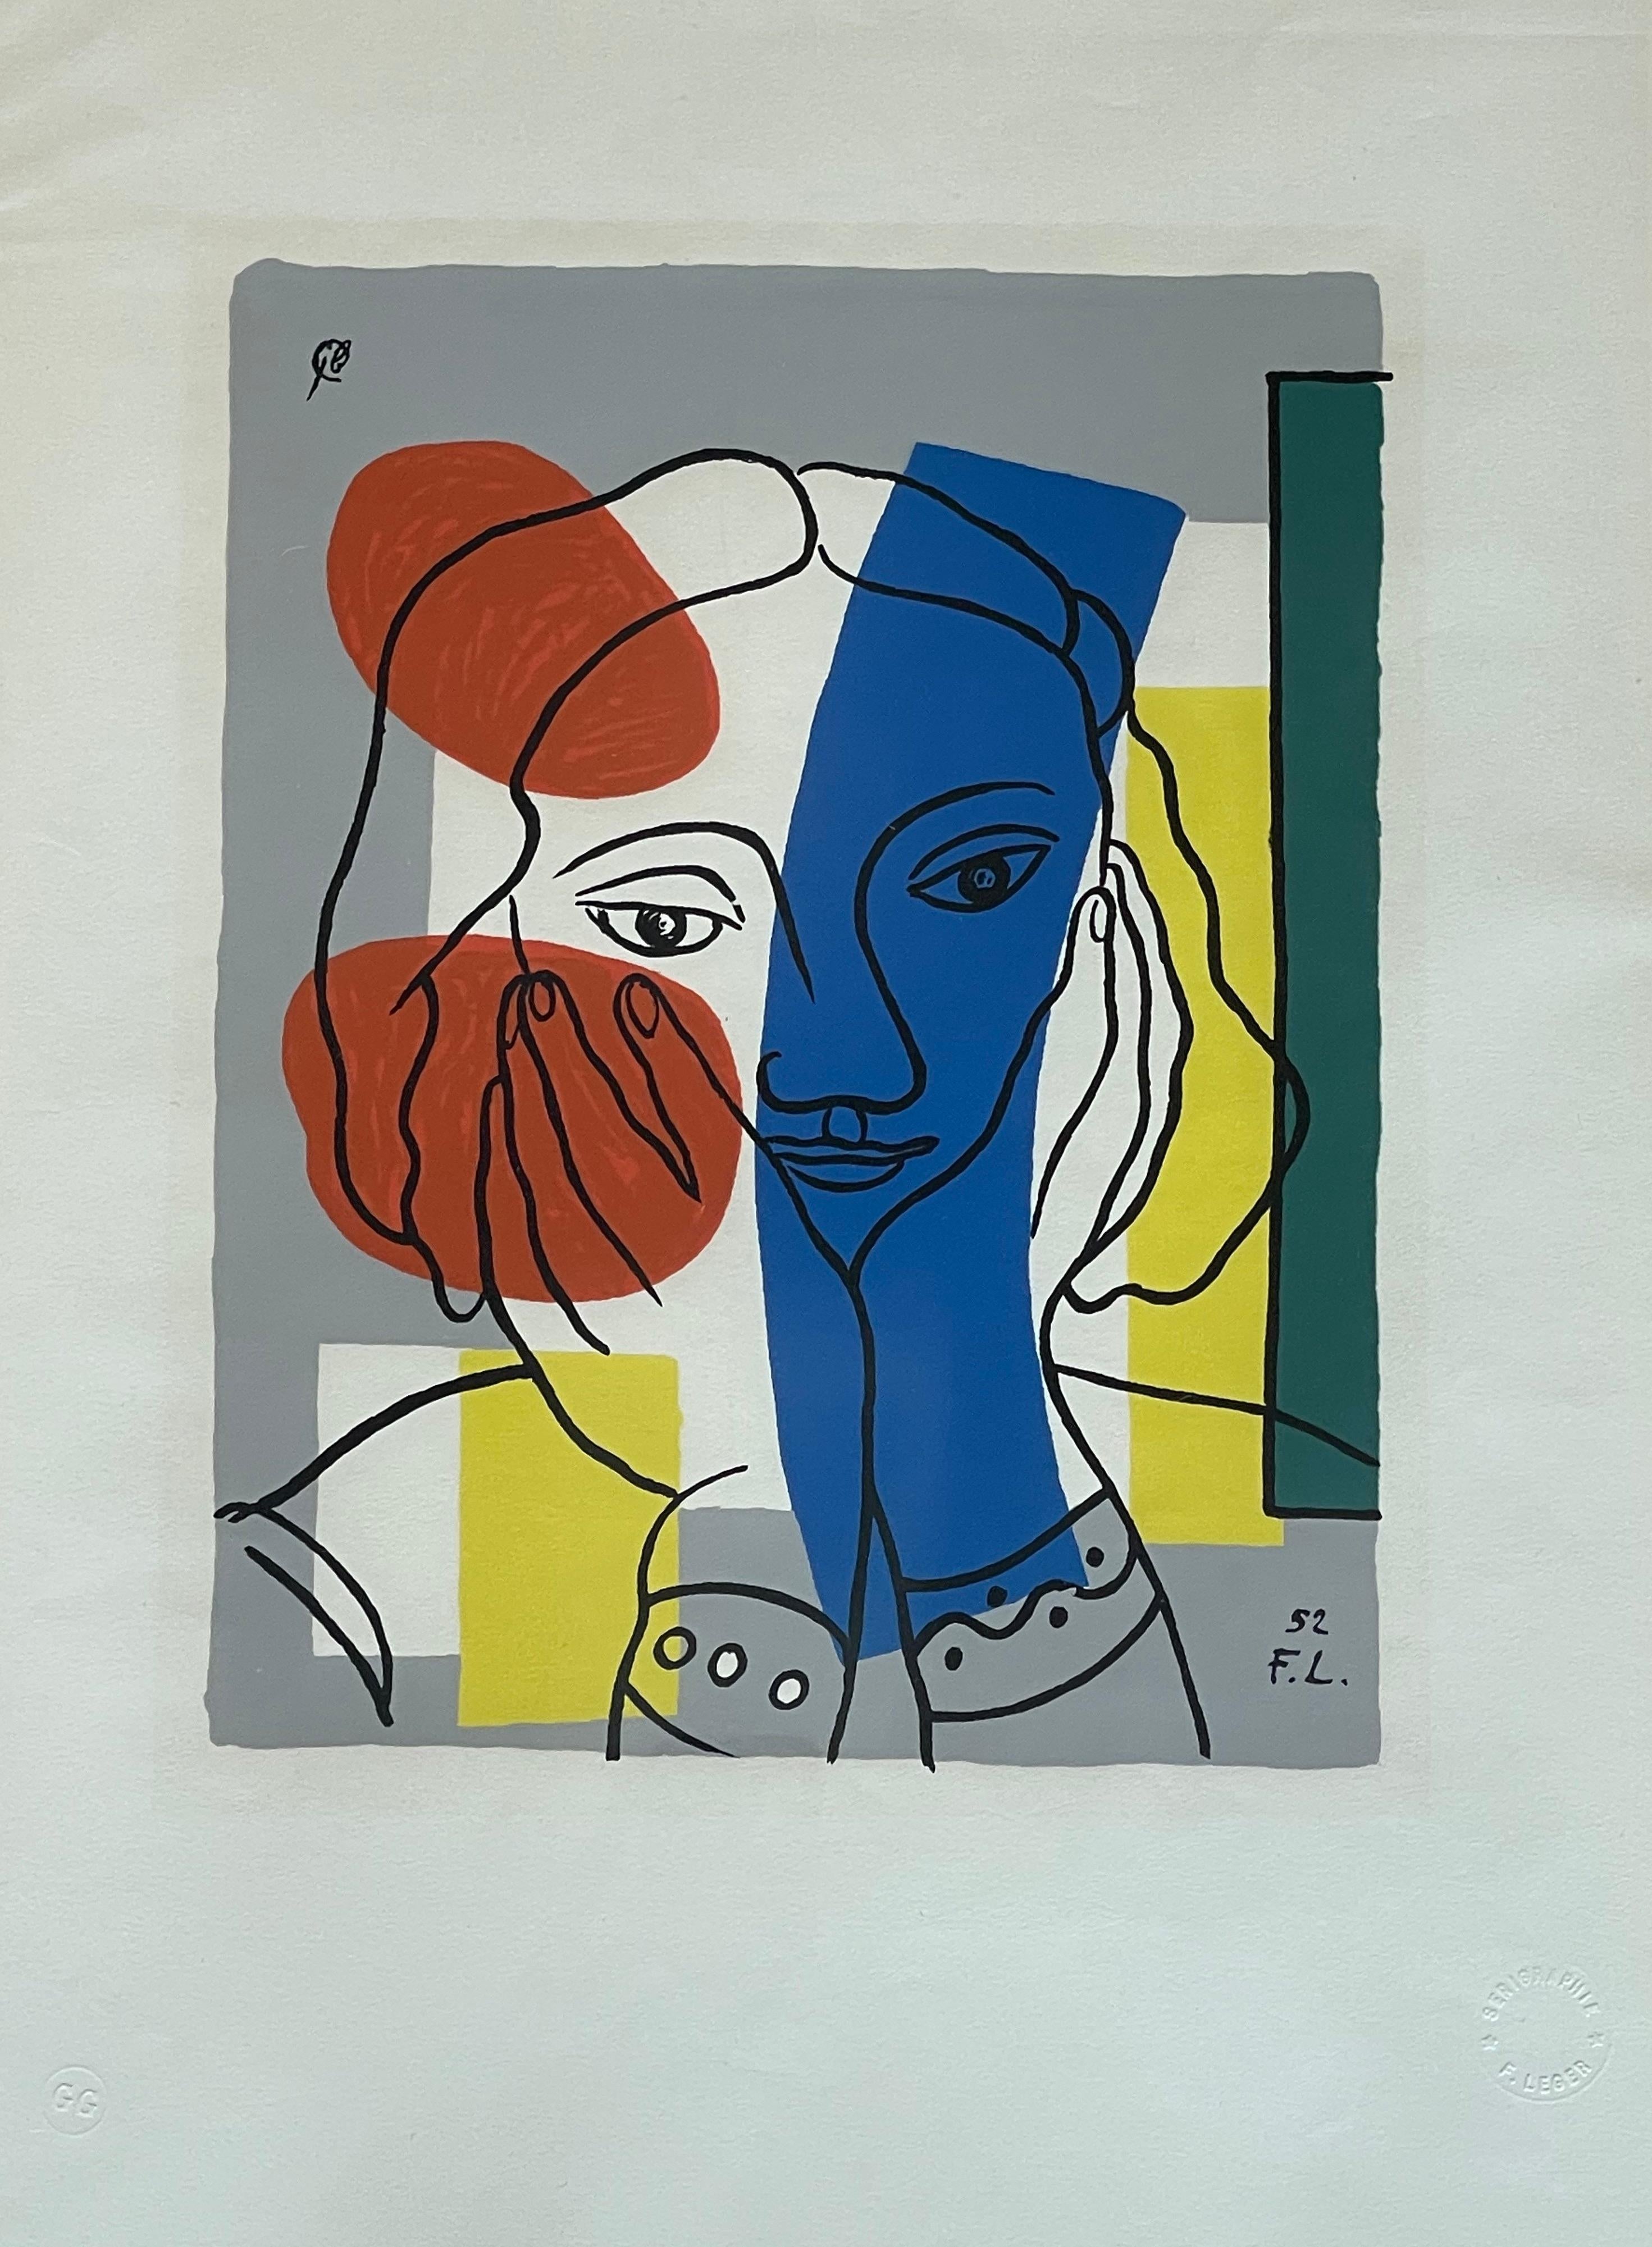 Peinture originale du célèbre peintre cubiste et pop art, Fernard Léger
Authentifié, signé et tamponné 
Source : Paris, Martyn Lawrence Bullard